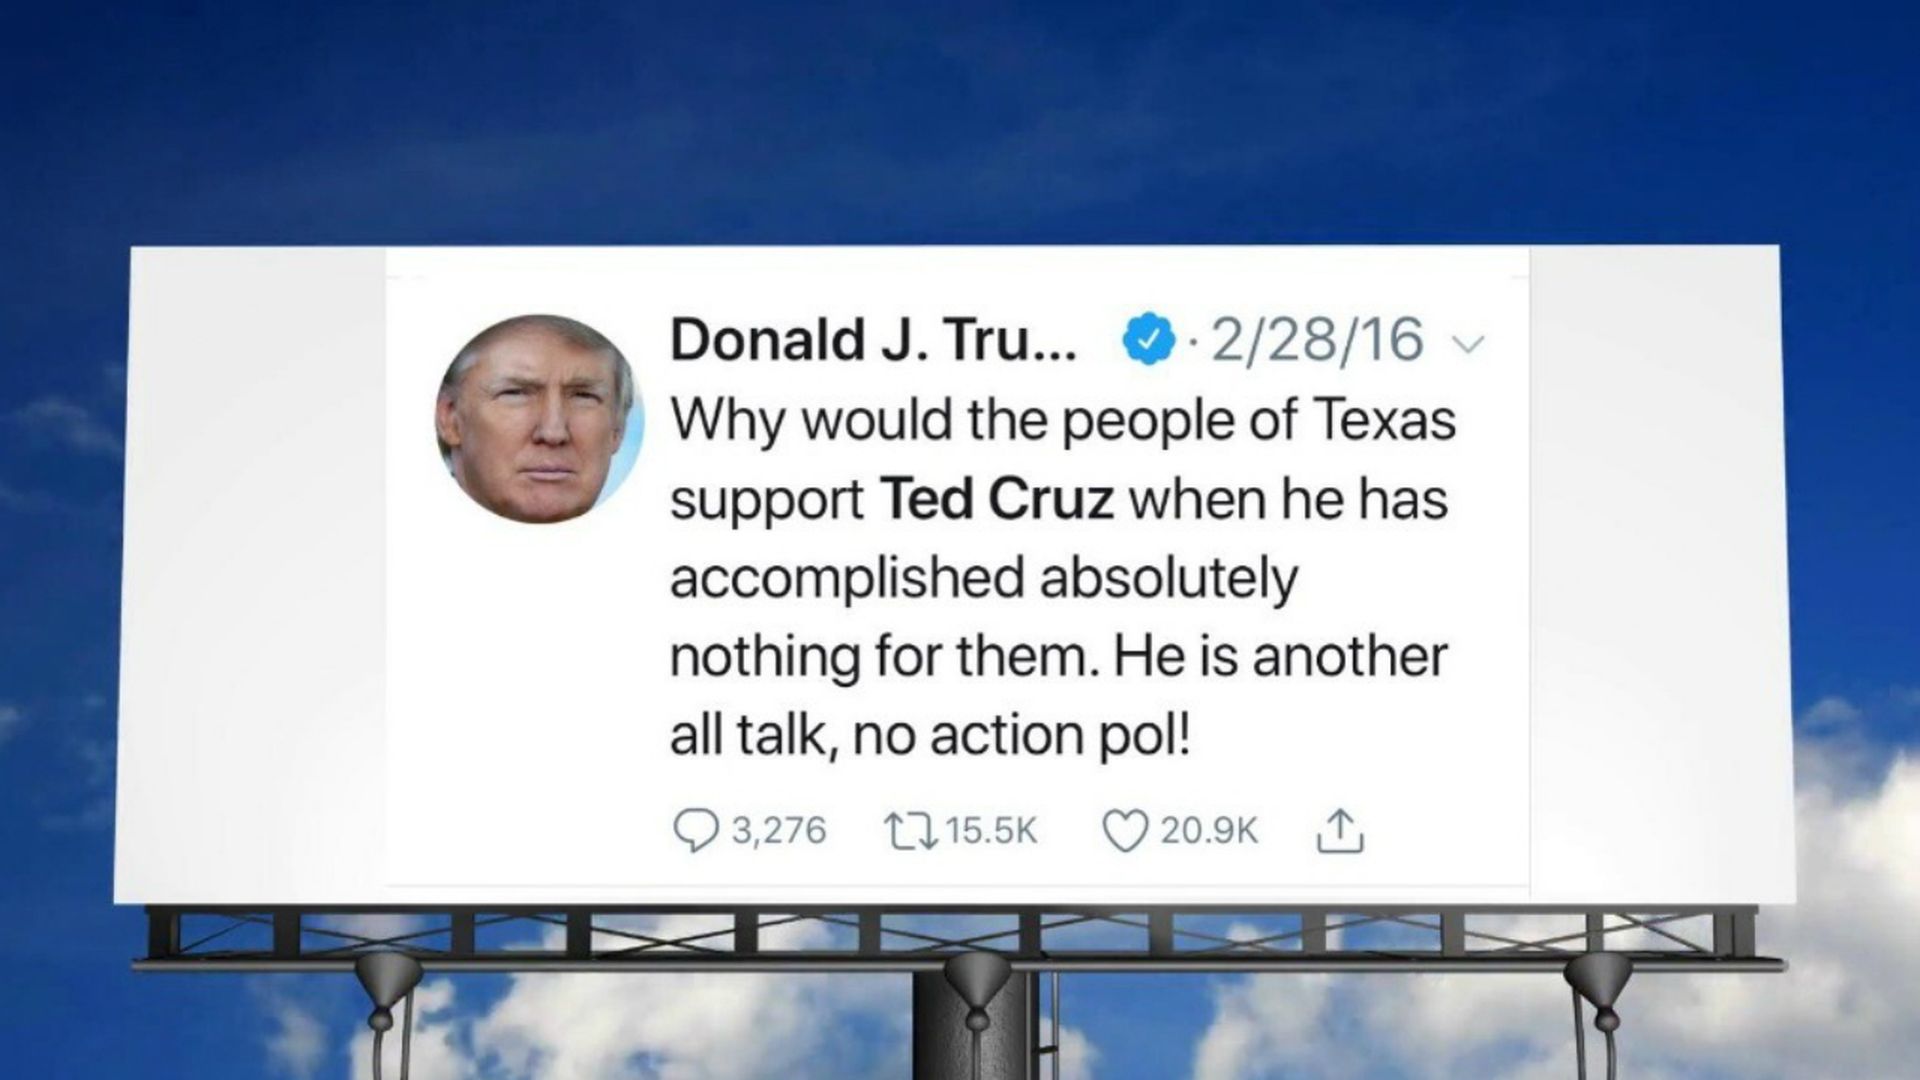 Billboard with Trump tweet attacking Ted Cruz